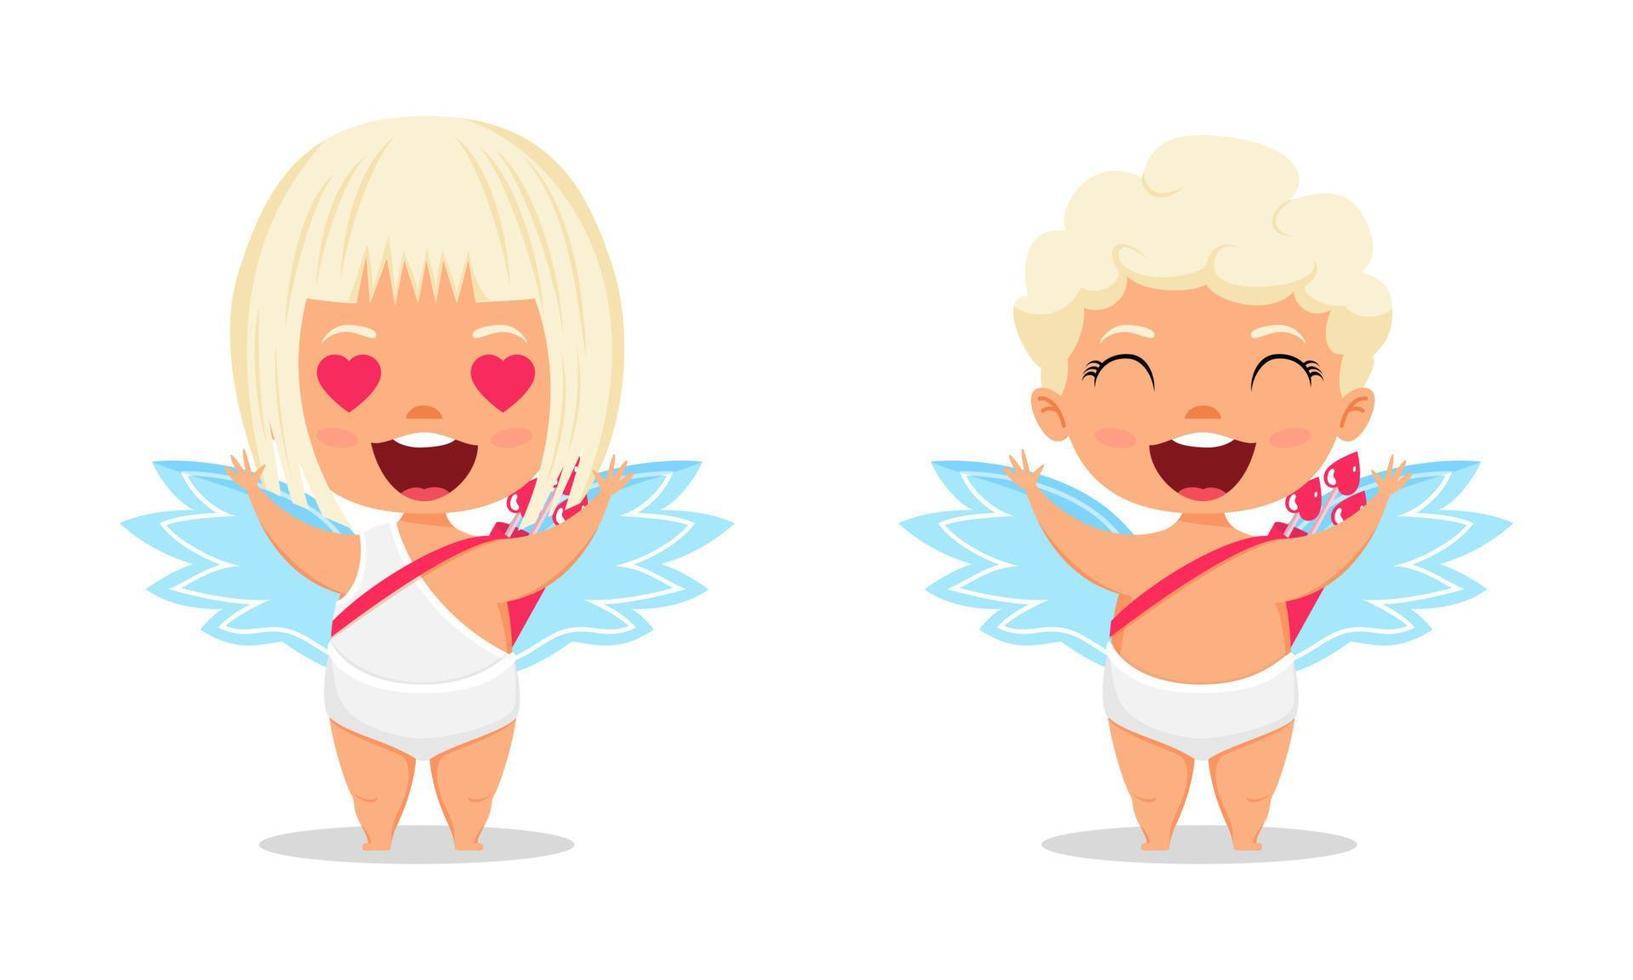 gelukkige schattige cupido-personages met vleugels en staande poseren met pijl met vrolijke uitdrukking geïsoleerd op een witte achtergrond vector